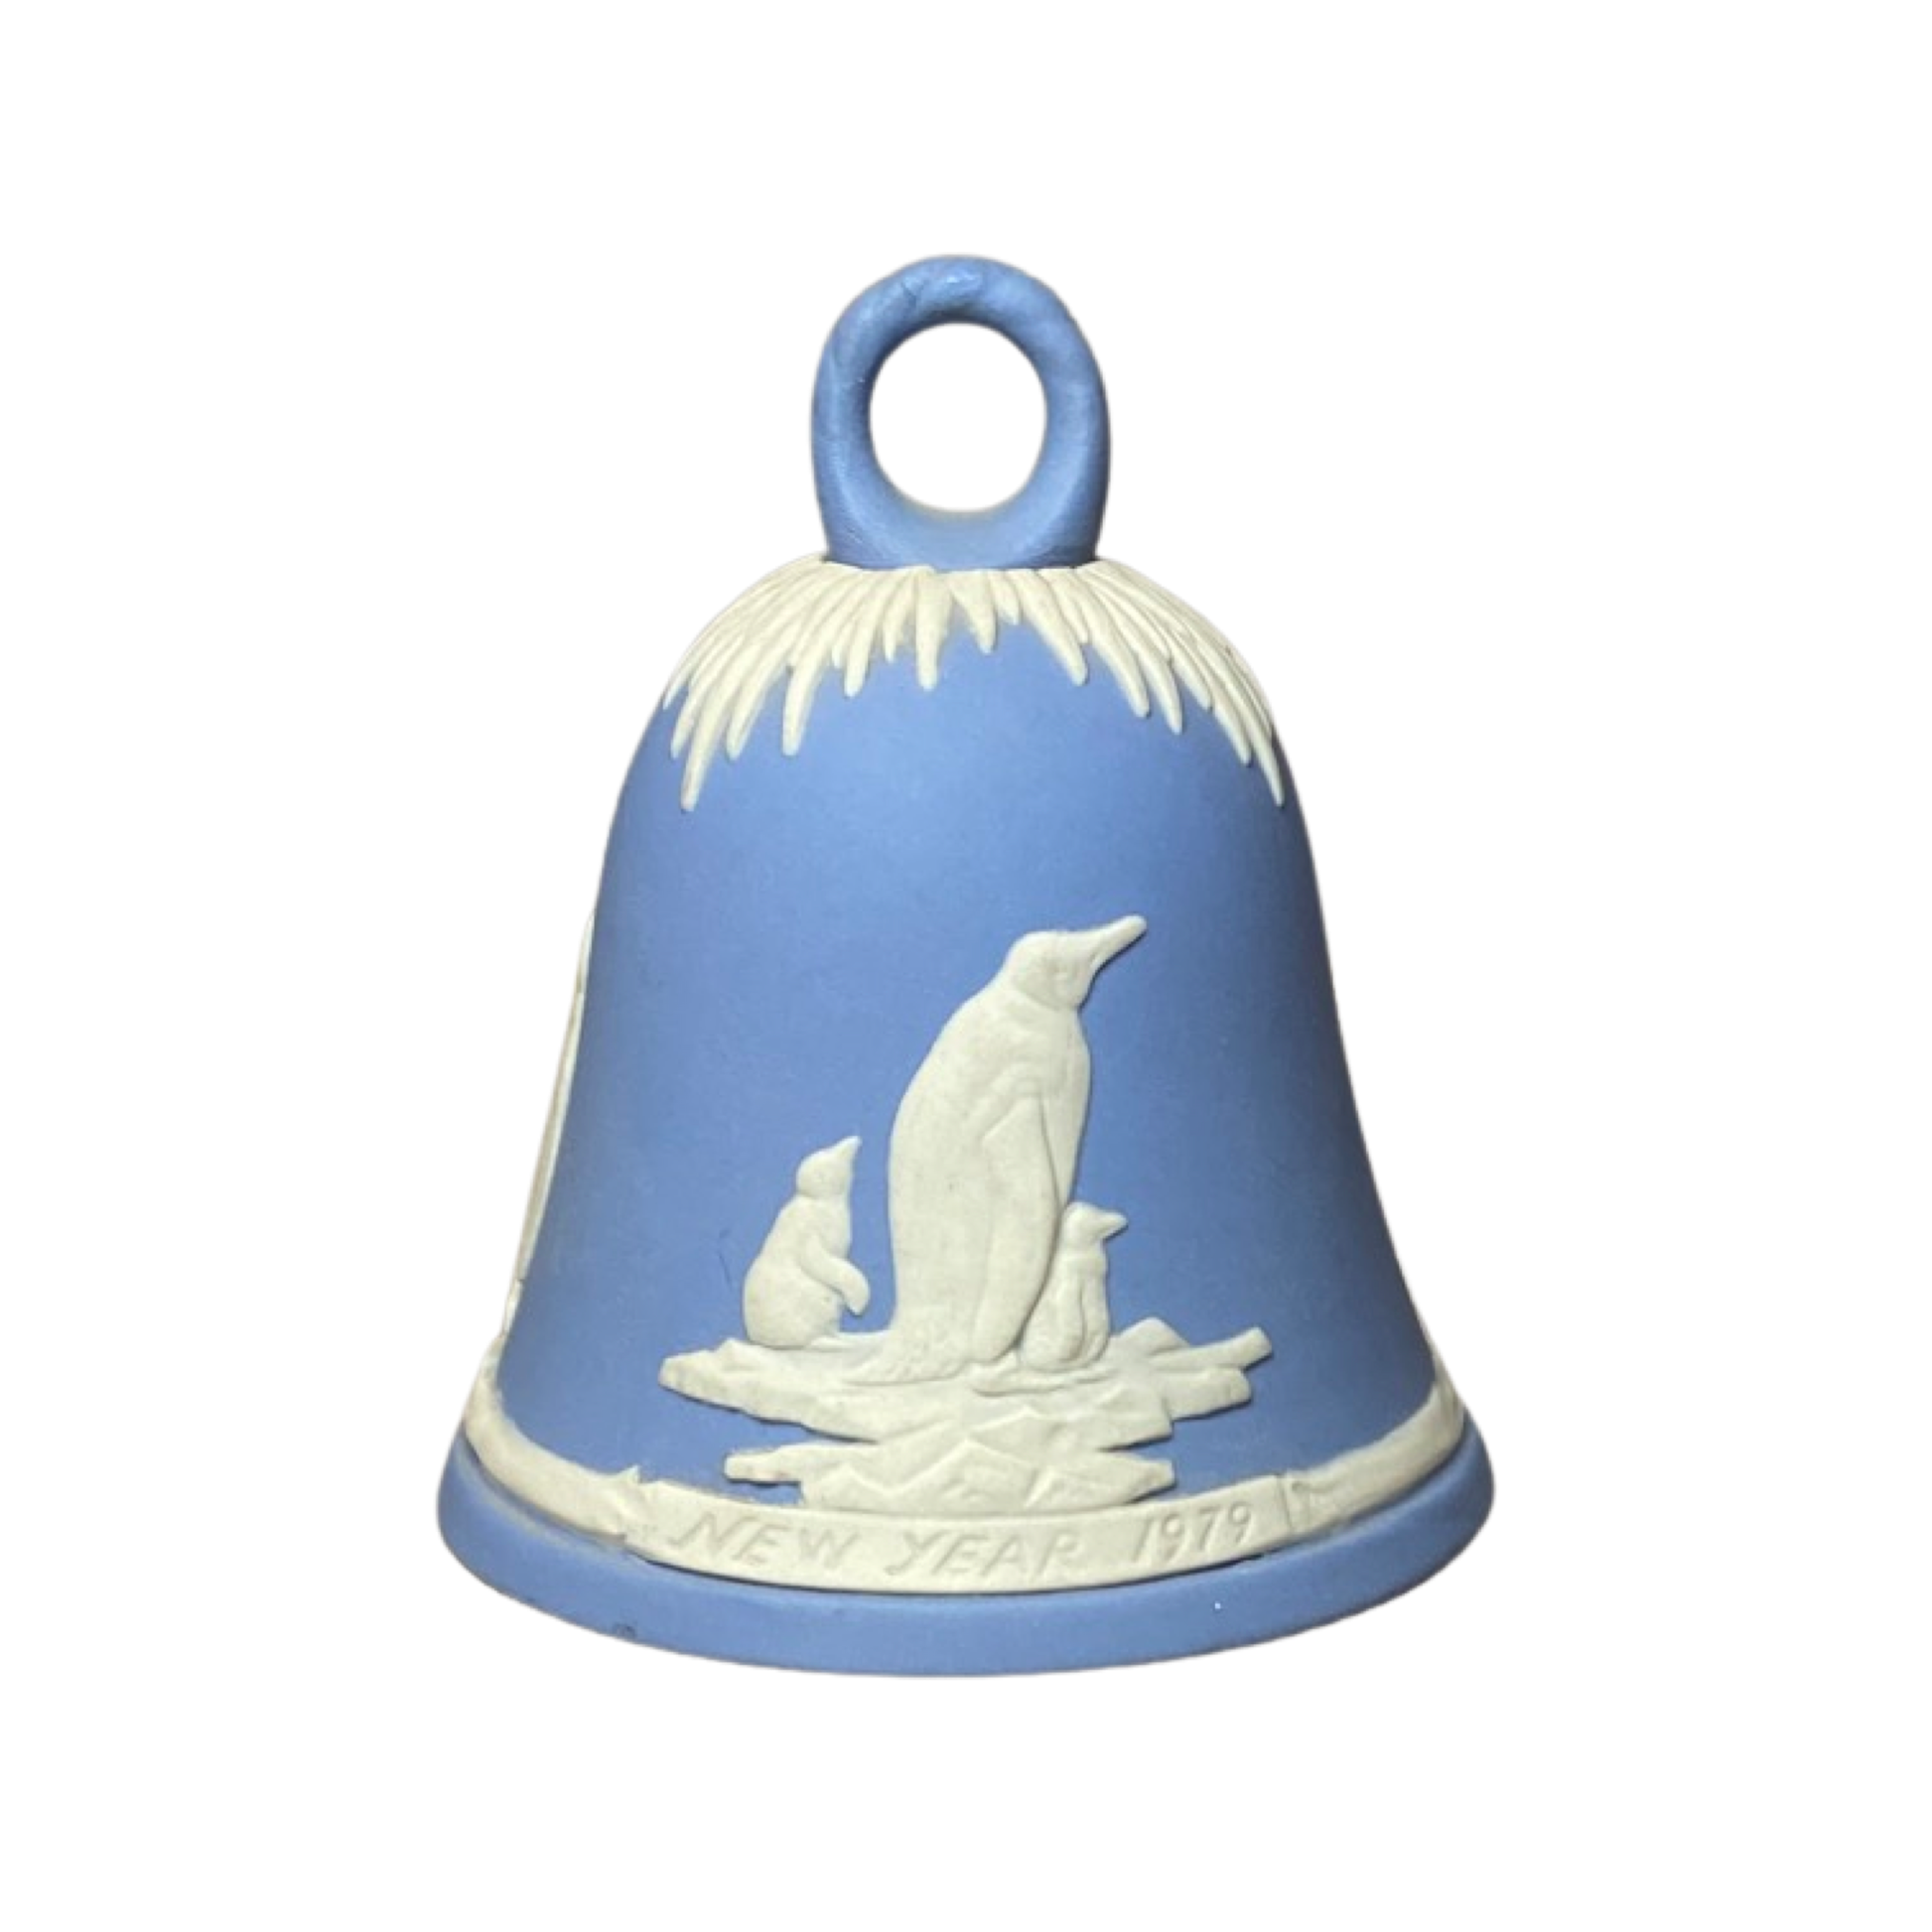 Wedgwood - Jasperware -  Blue & White - New Year 1979 Penguin Themed Bell